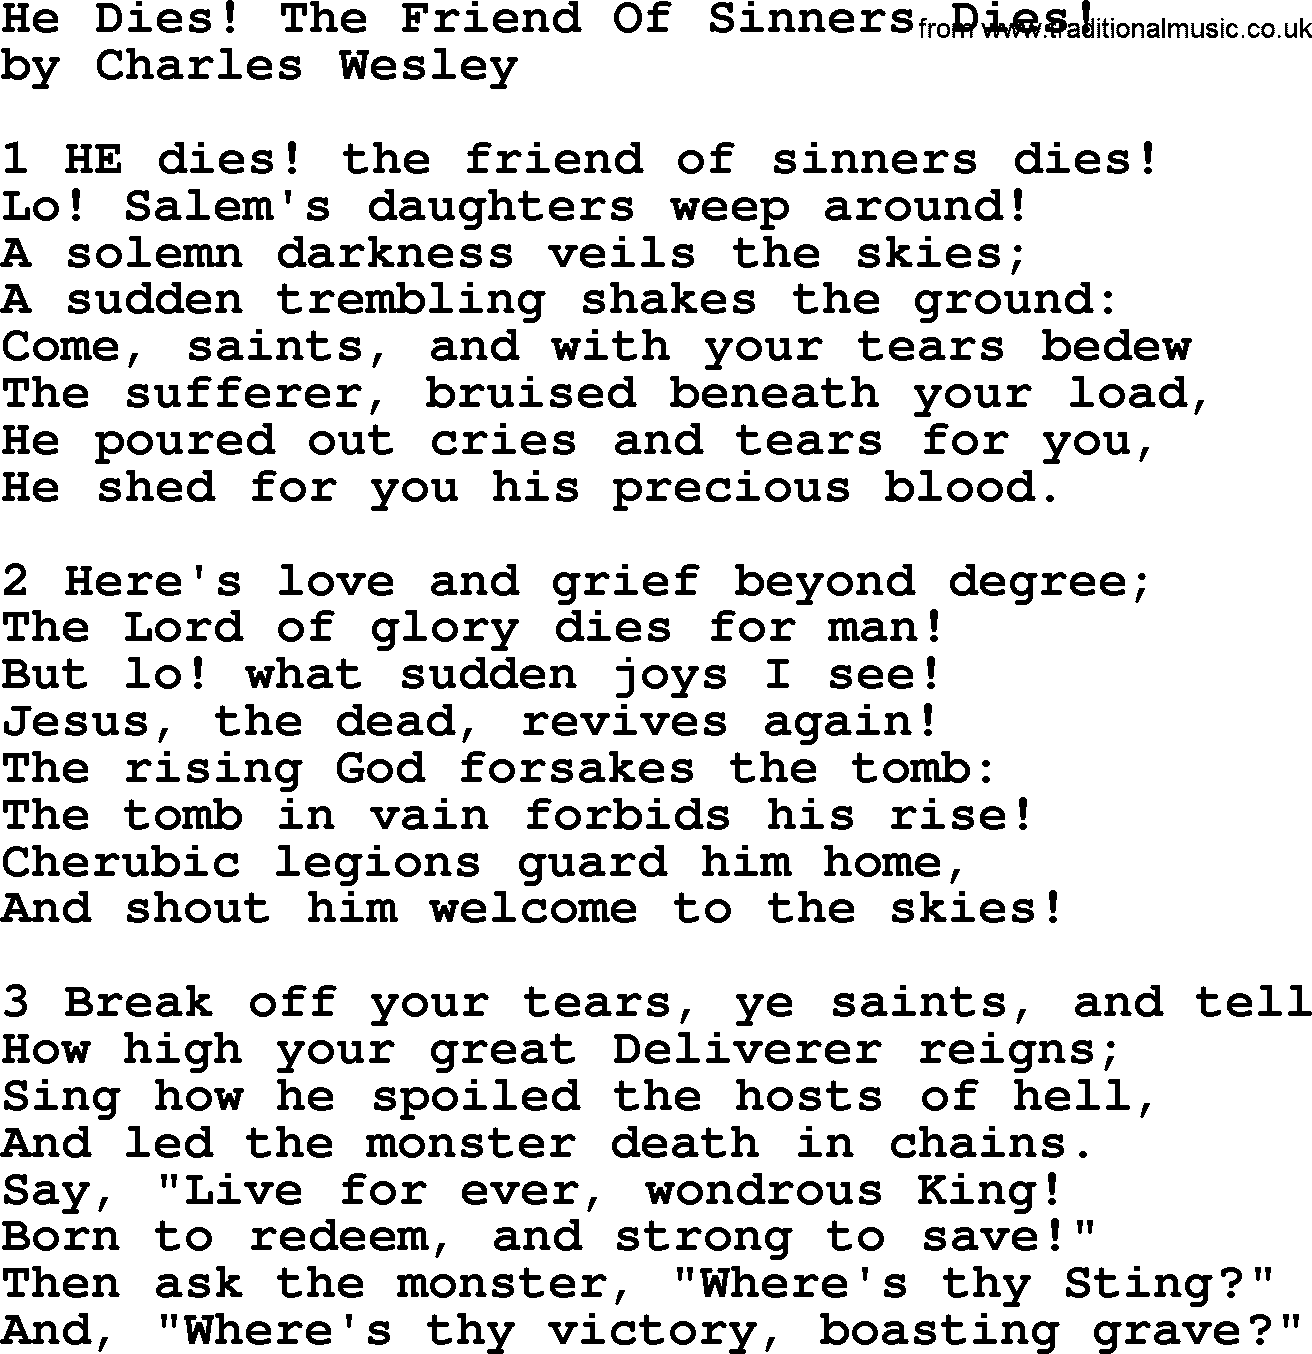 Charles Wesley hymn: He Dies! The Friend Of Sinners Dies!, lyrics